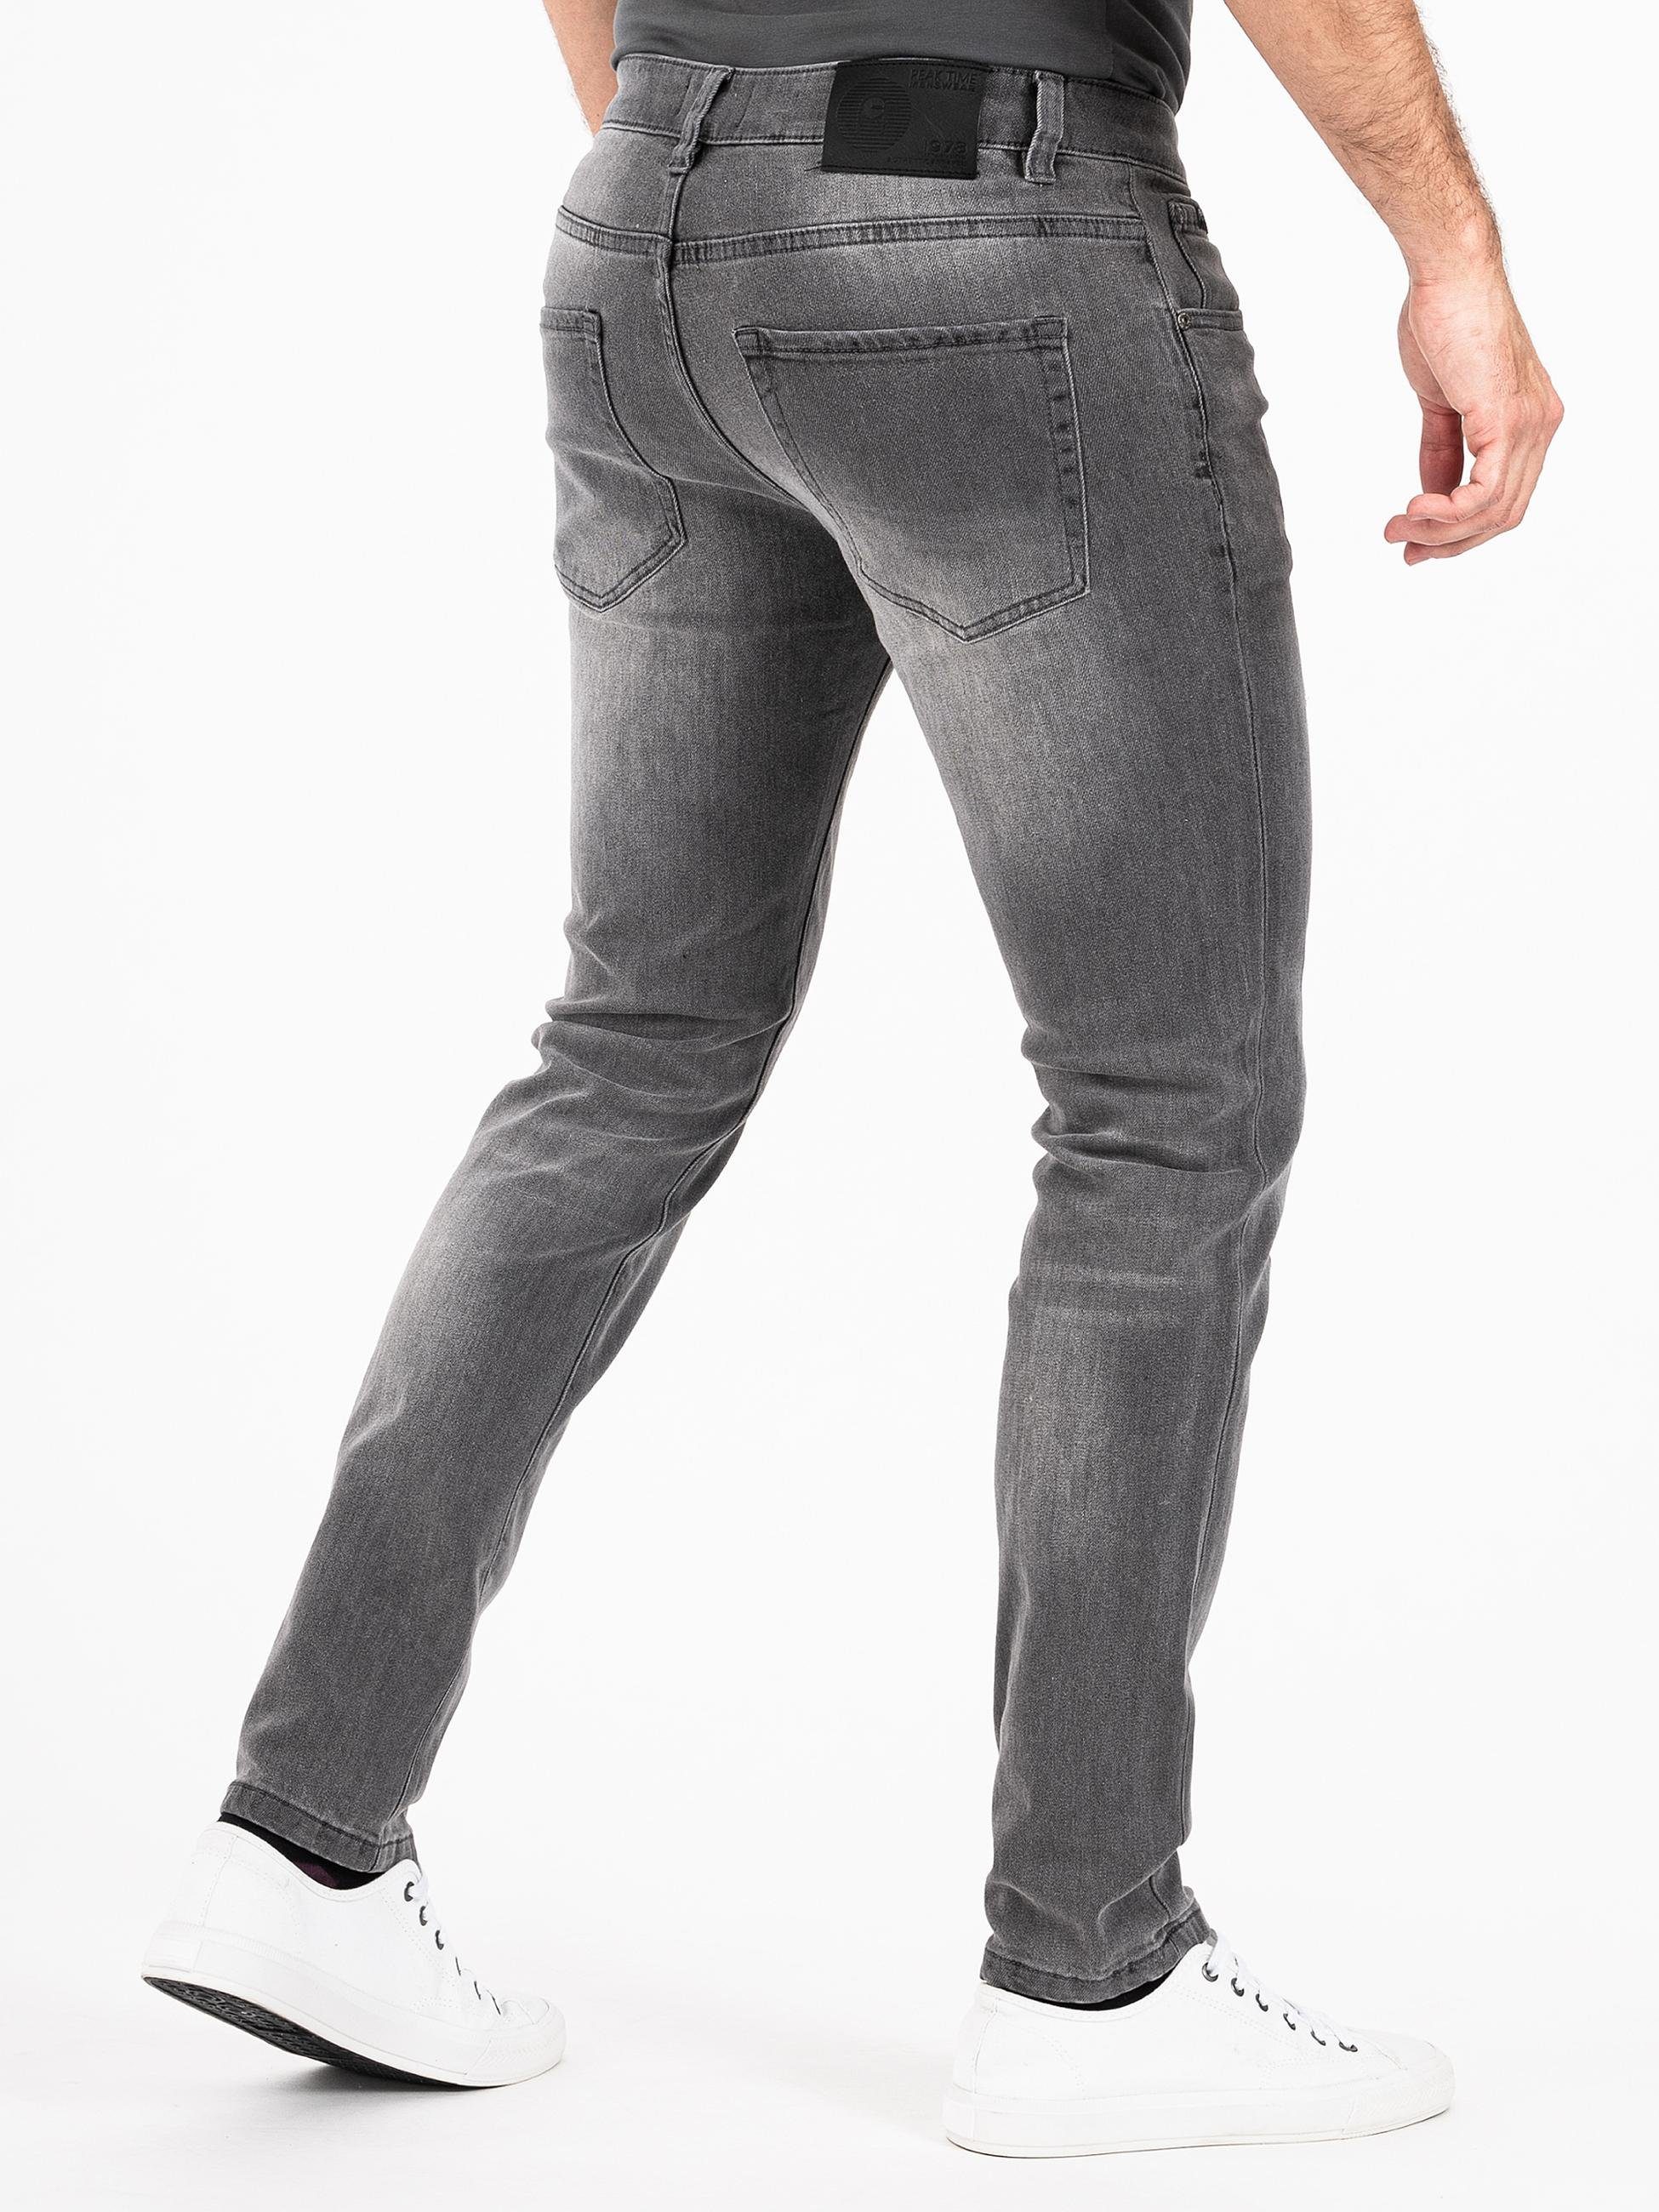 PEAK TIME Slim-fit-Jeans München Herren Destroyed-Optik mit Stretch-Bund Jeans und hellgrau